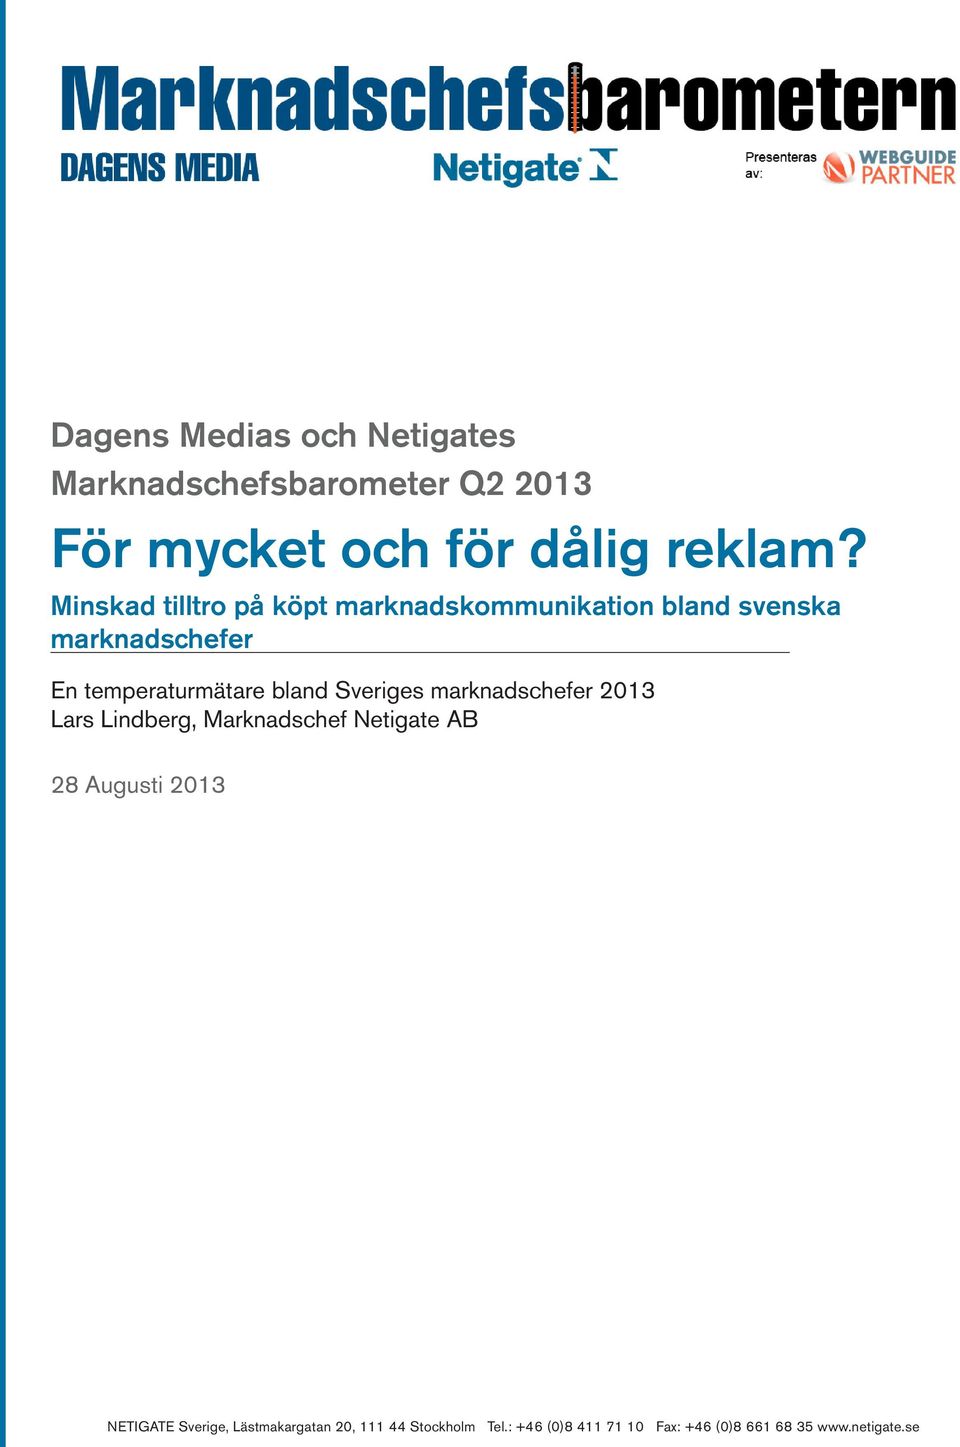 Minskad tilltro på köpt marknadskommunikation bland svenska